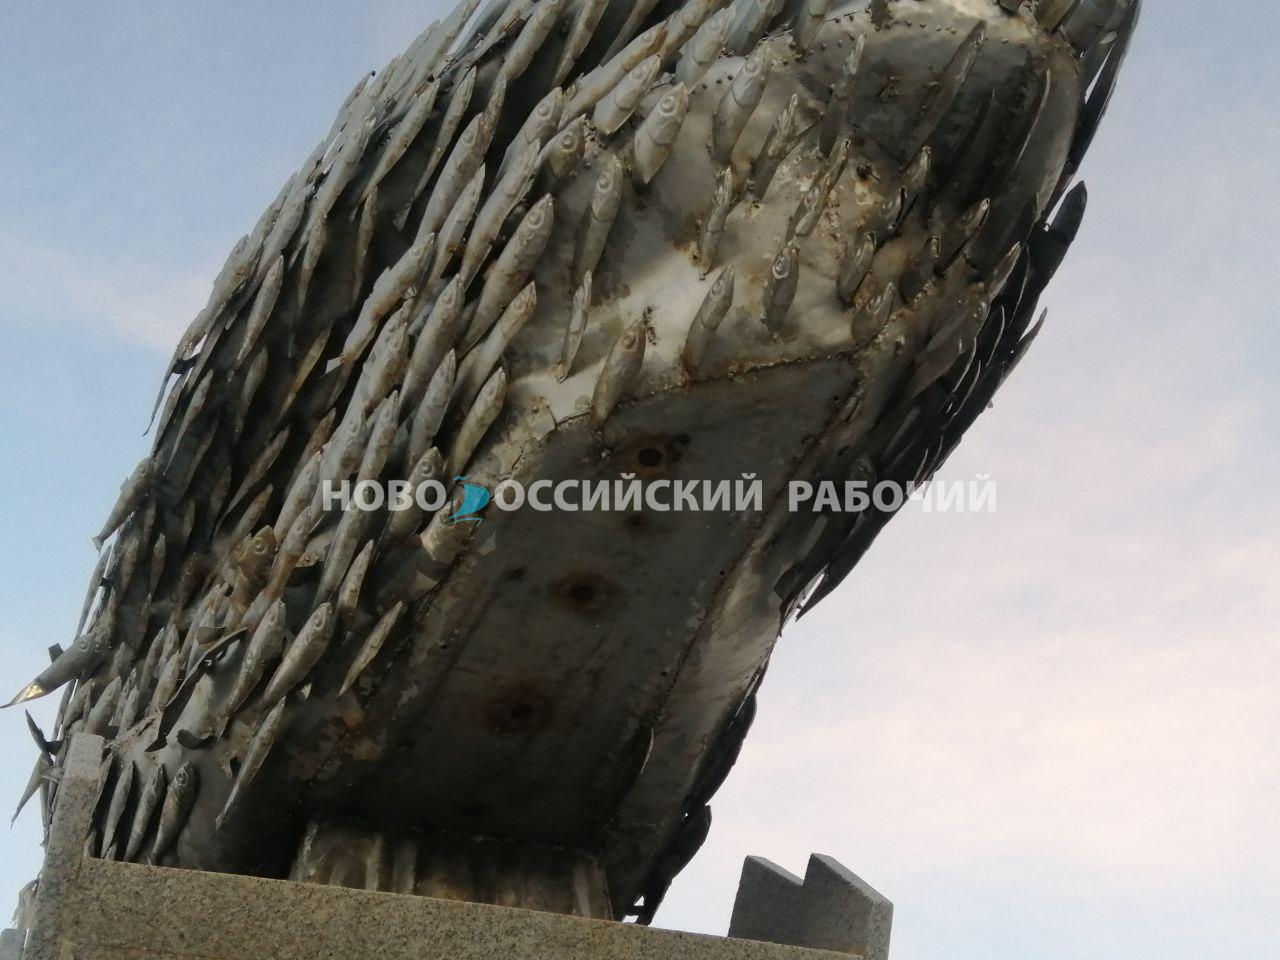 Хамса на памятнике в Новороссийске выглядит несвежей